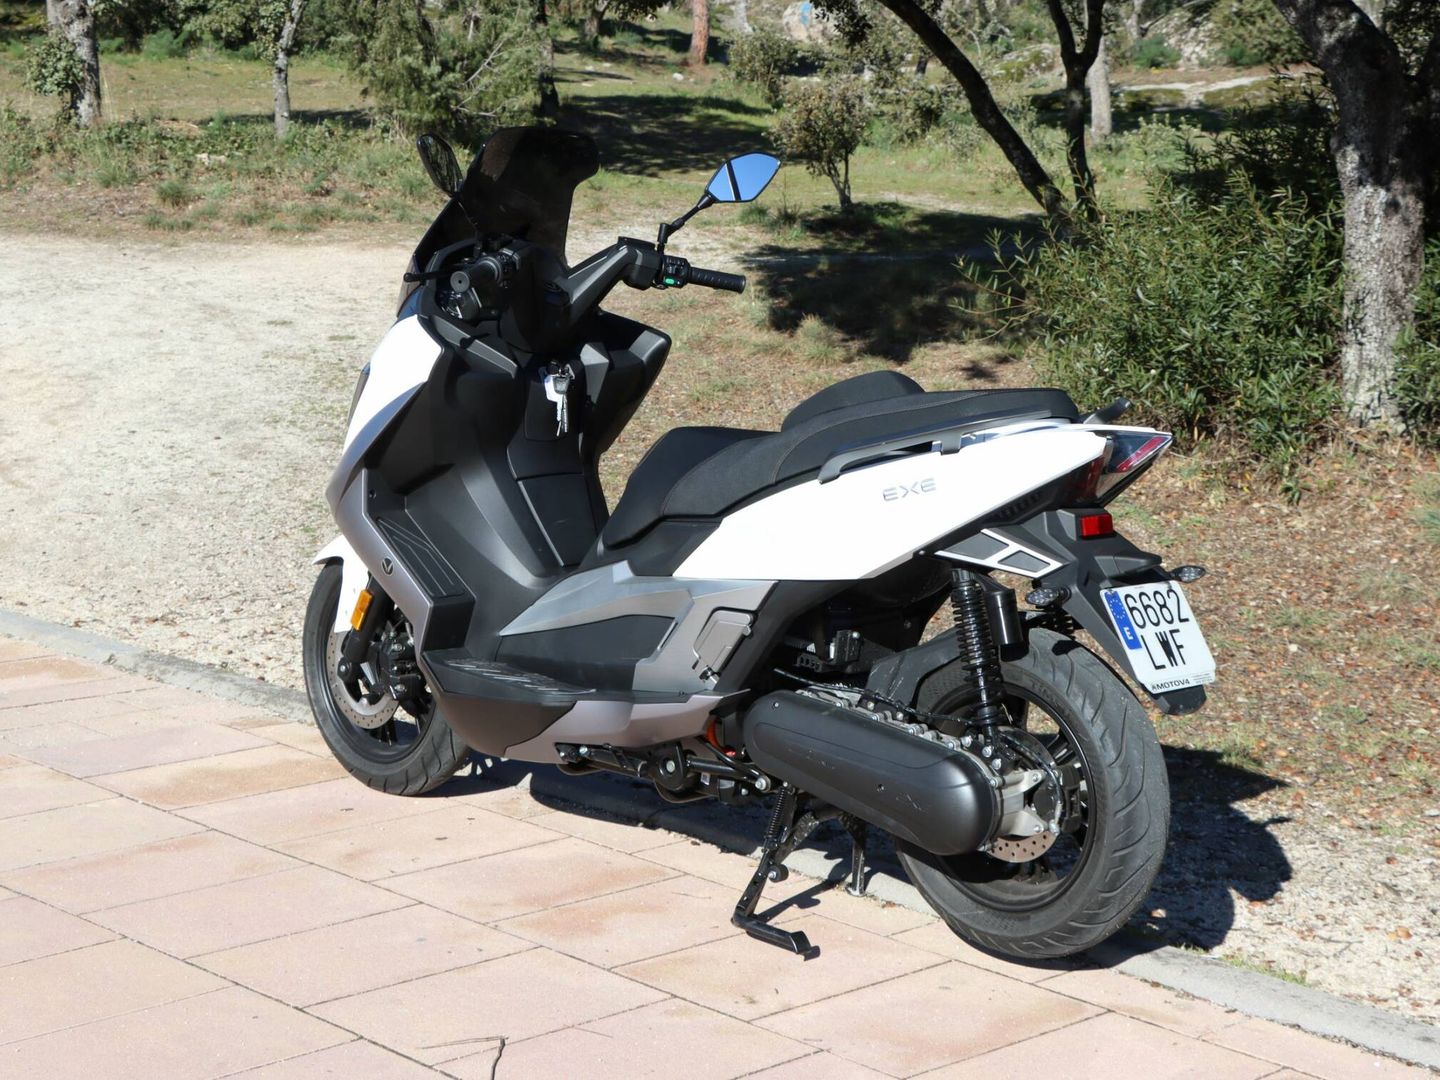 El motor va unido a la transmisión y simula el aspecto de los scooters convencionales.

